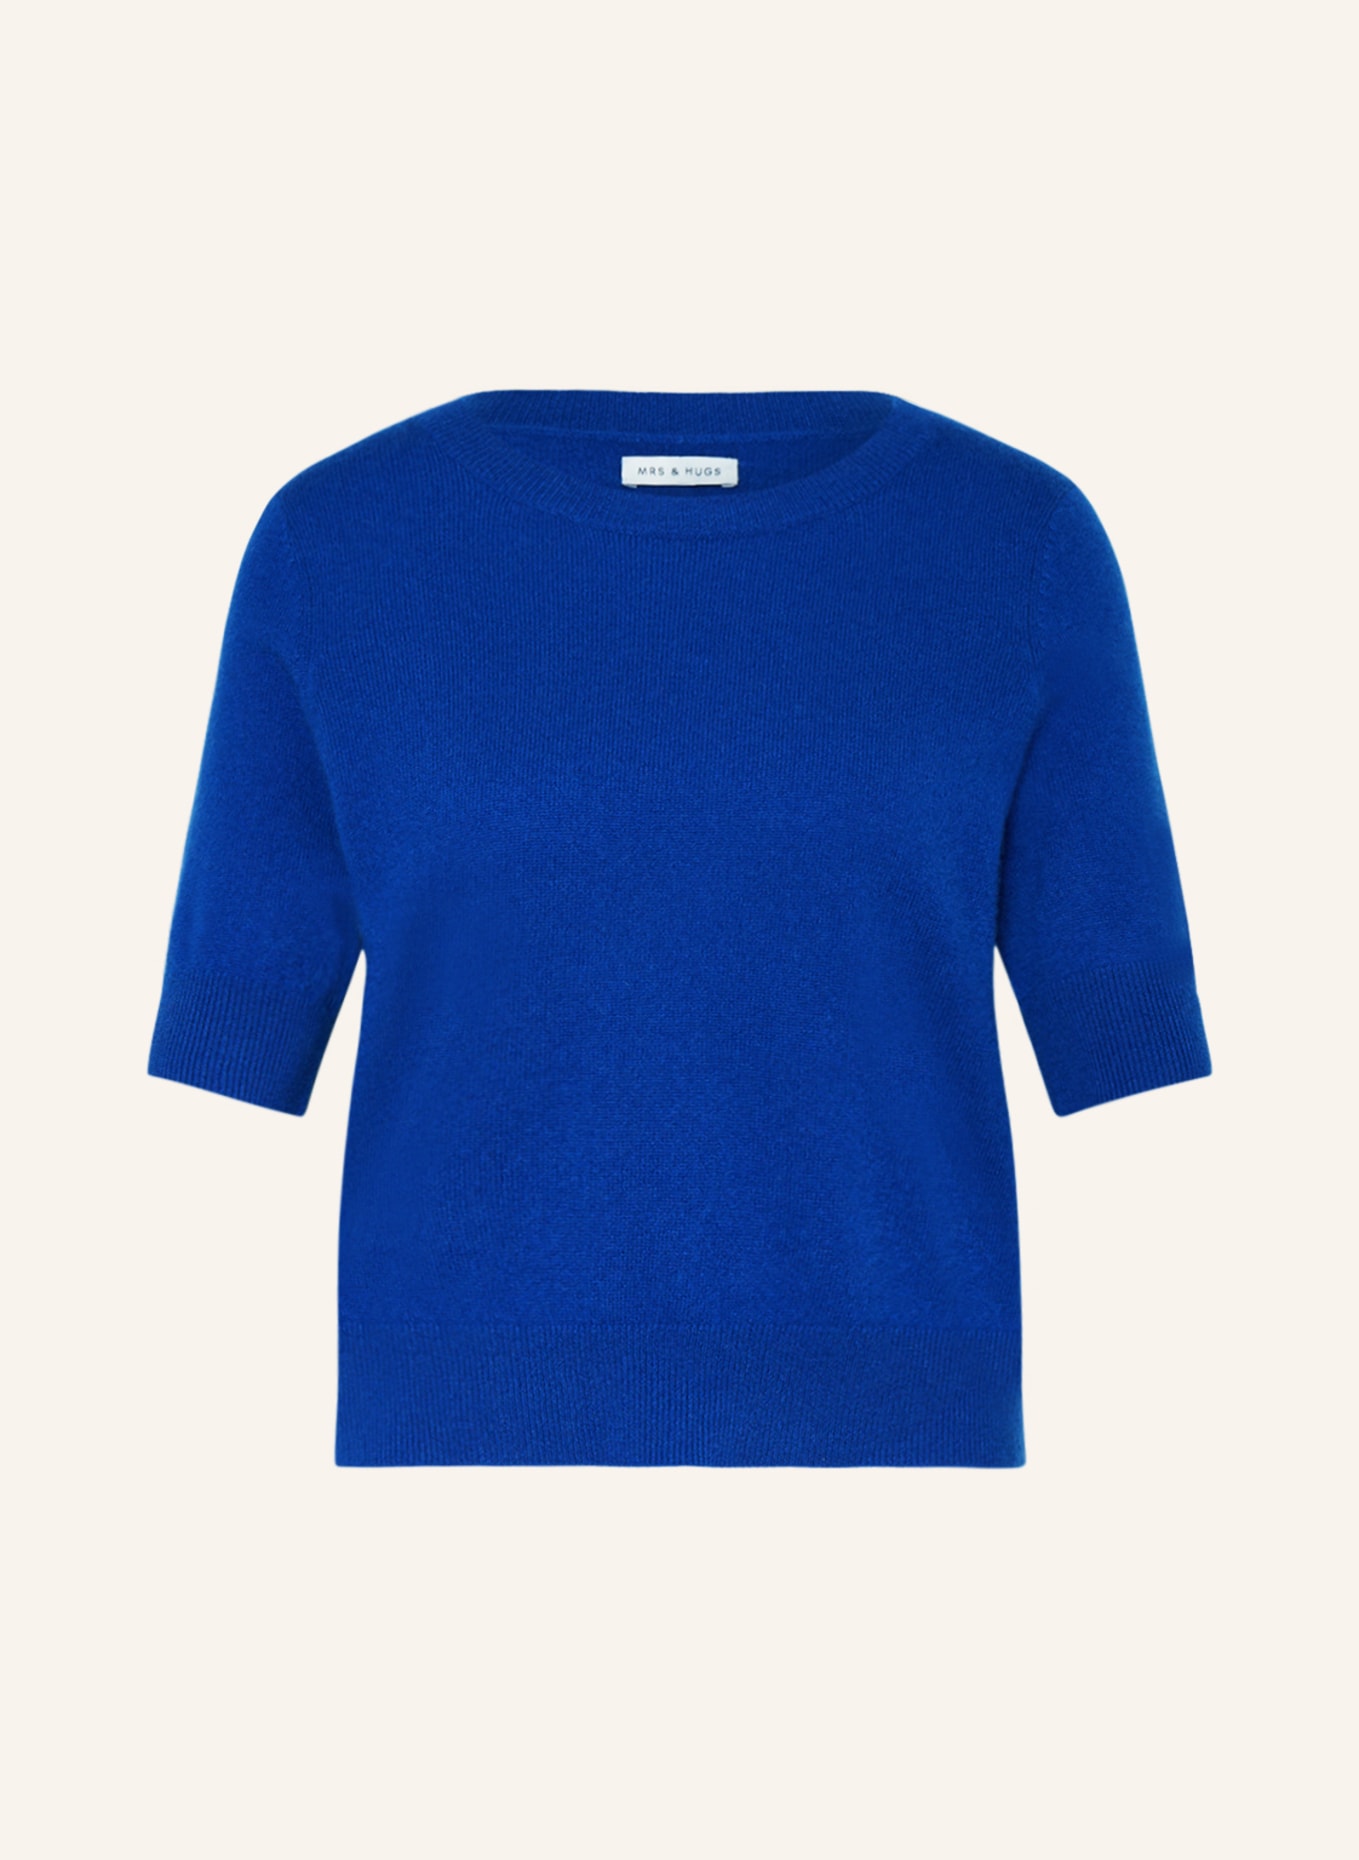 MRS & HUGS Strickshirt aus Cashmere, Farbe: BLAU (Bild 1)